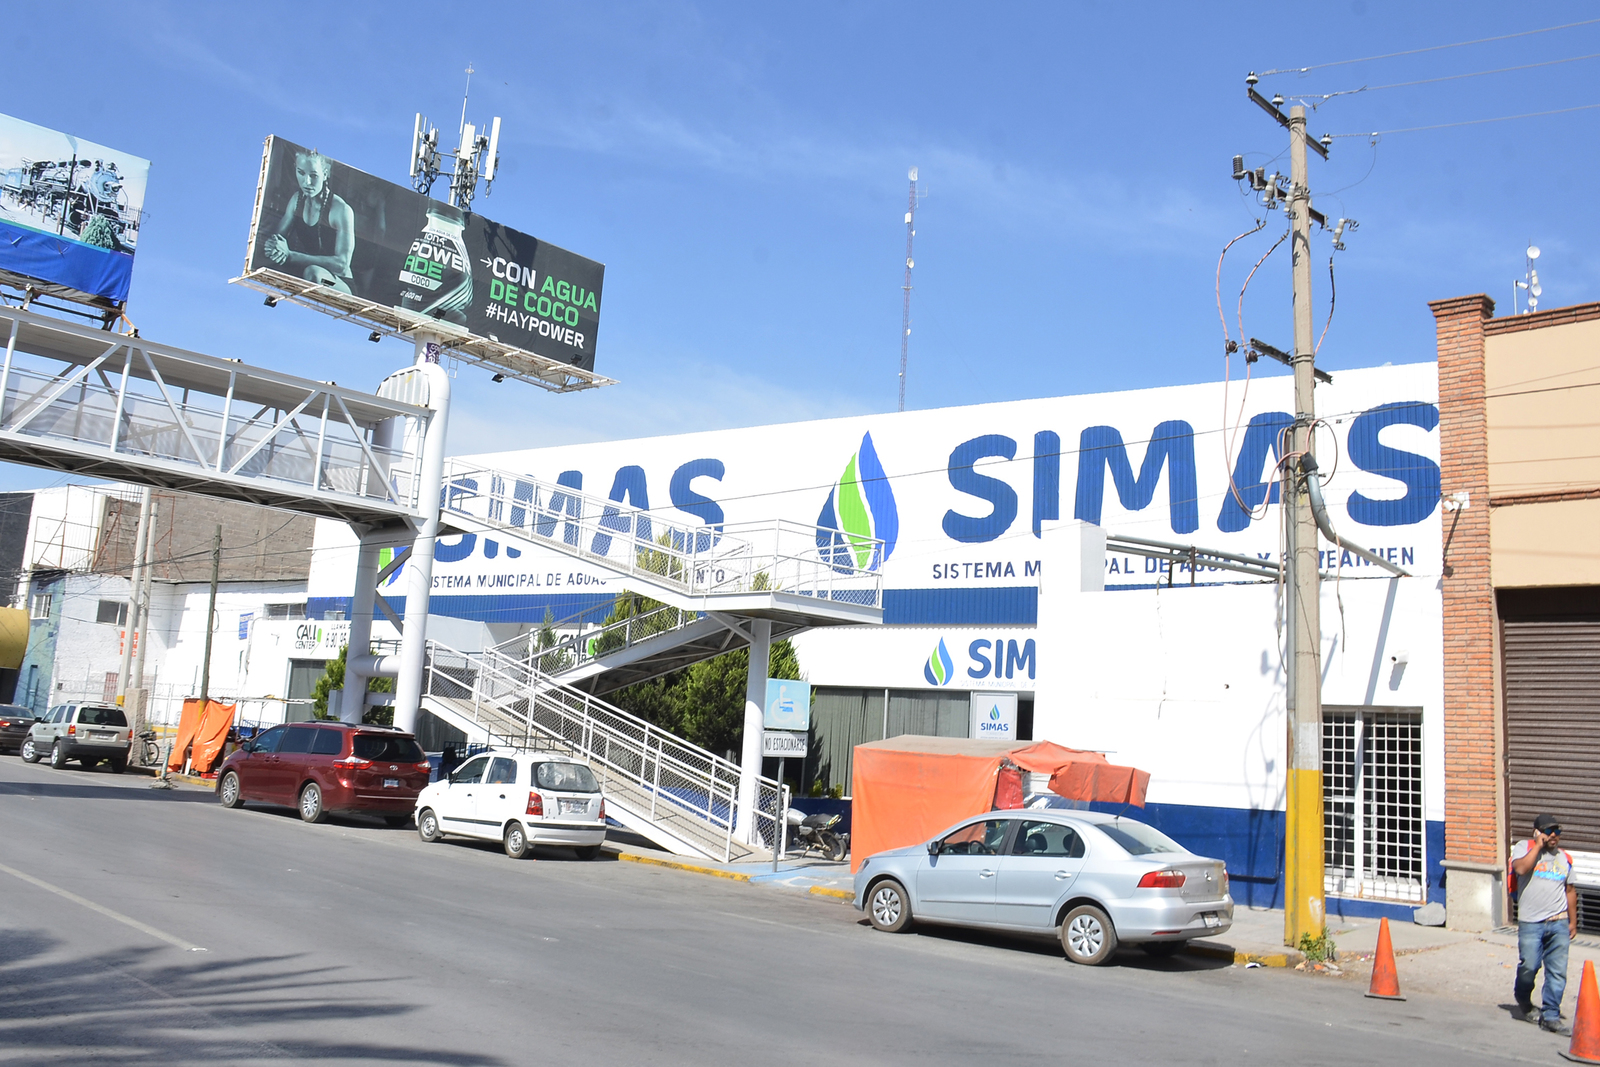 El conflicto entre Simas y la CFE se desató luego de que arreciaron los cortes de energía eléctrica. (FERNANDO COMPEÁN)